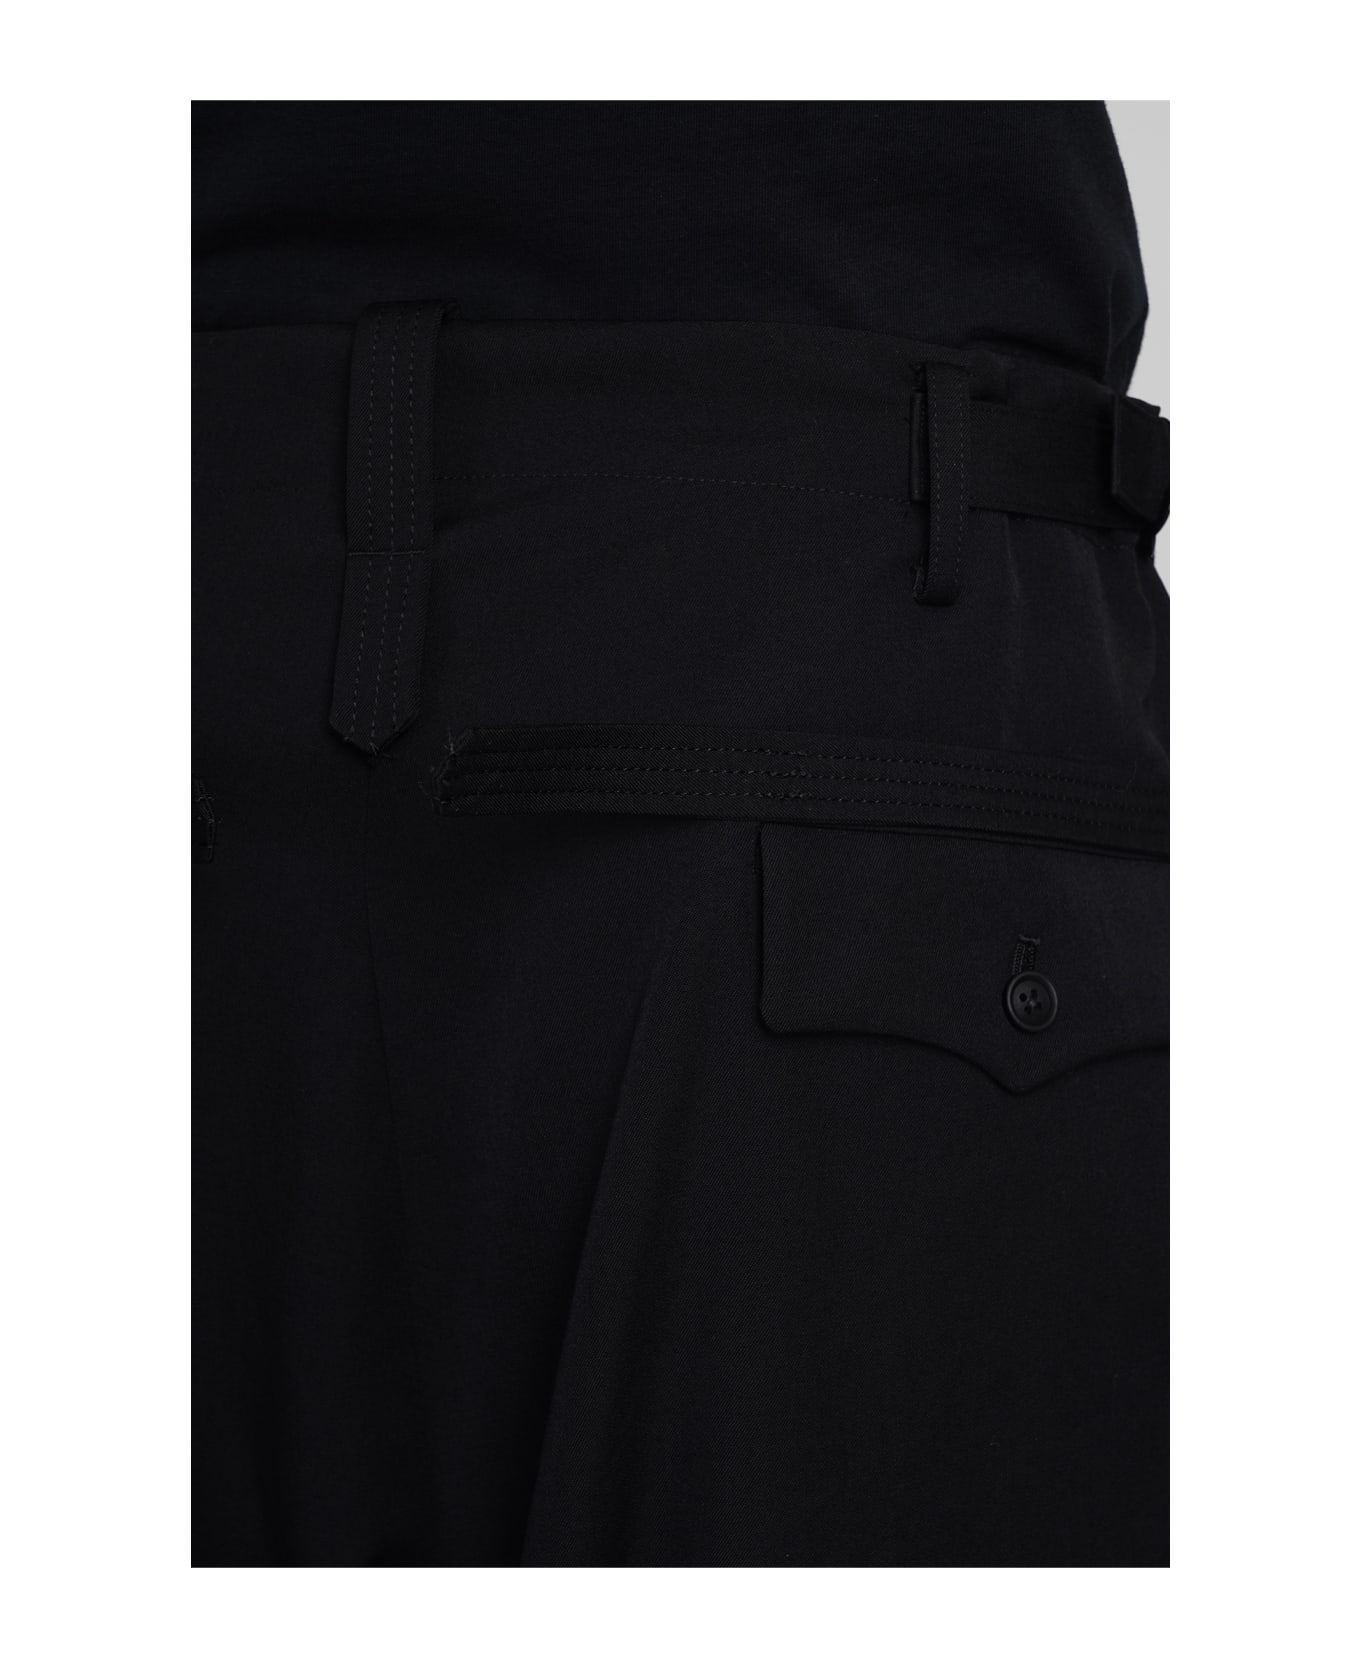 Yohji Yamamoto Pants In Black Wool - black